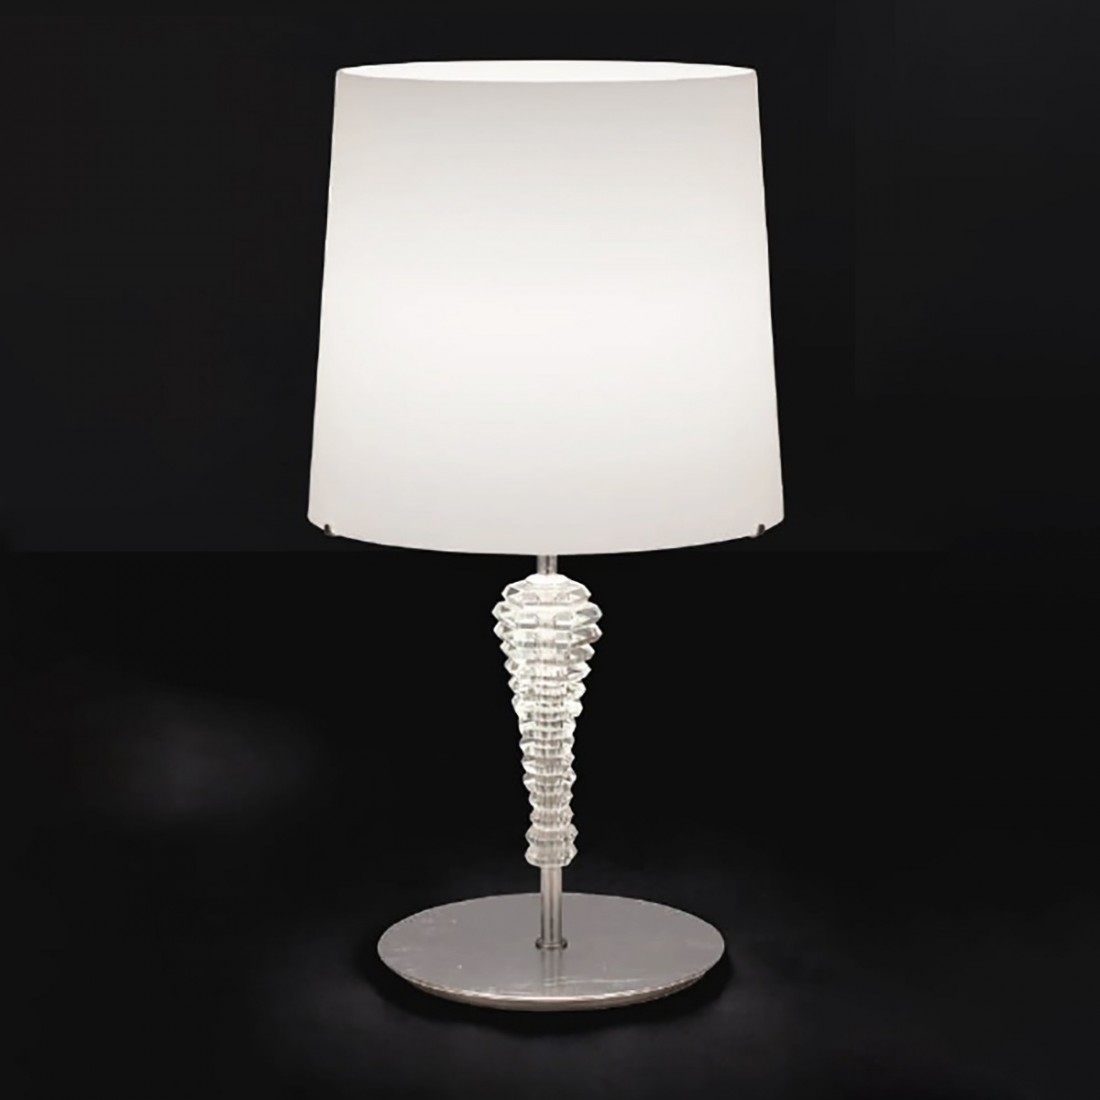 Abat-jour LM-4422 1LT E27 LED 58H vetro soffiato bianco crema cristallo lampada tavolo classica interno